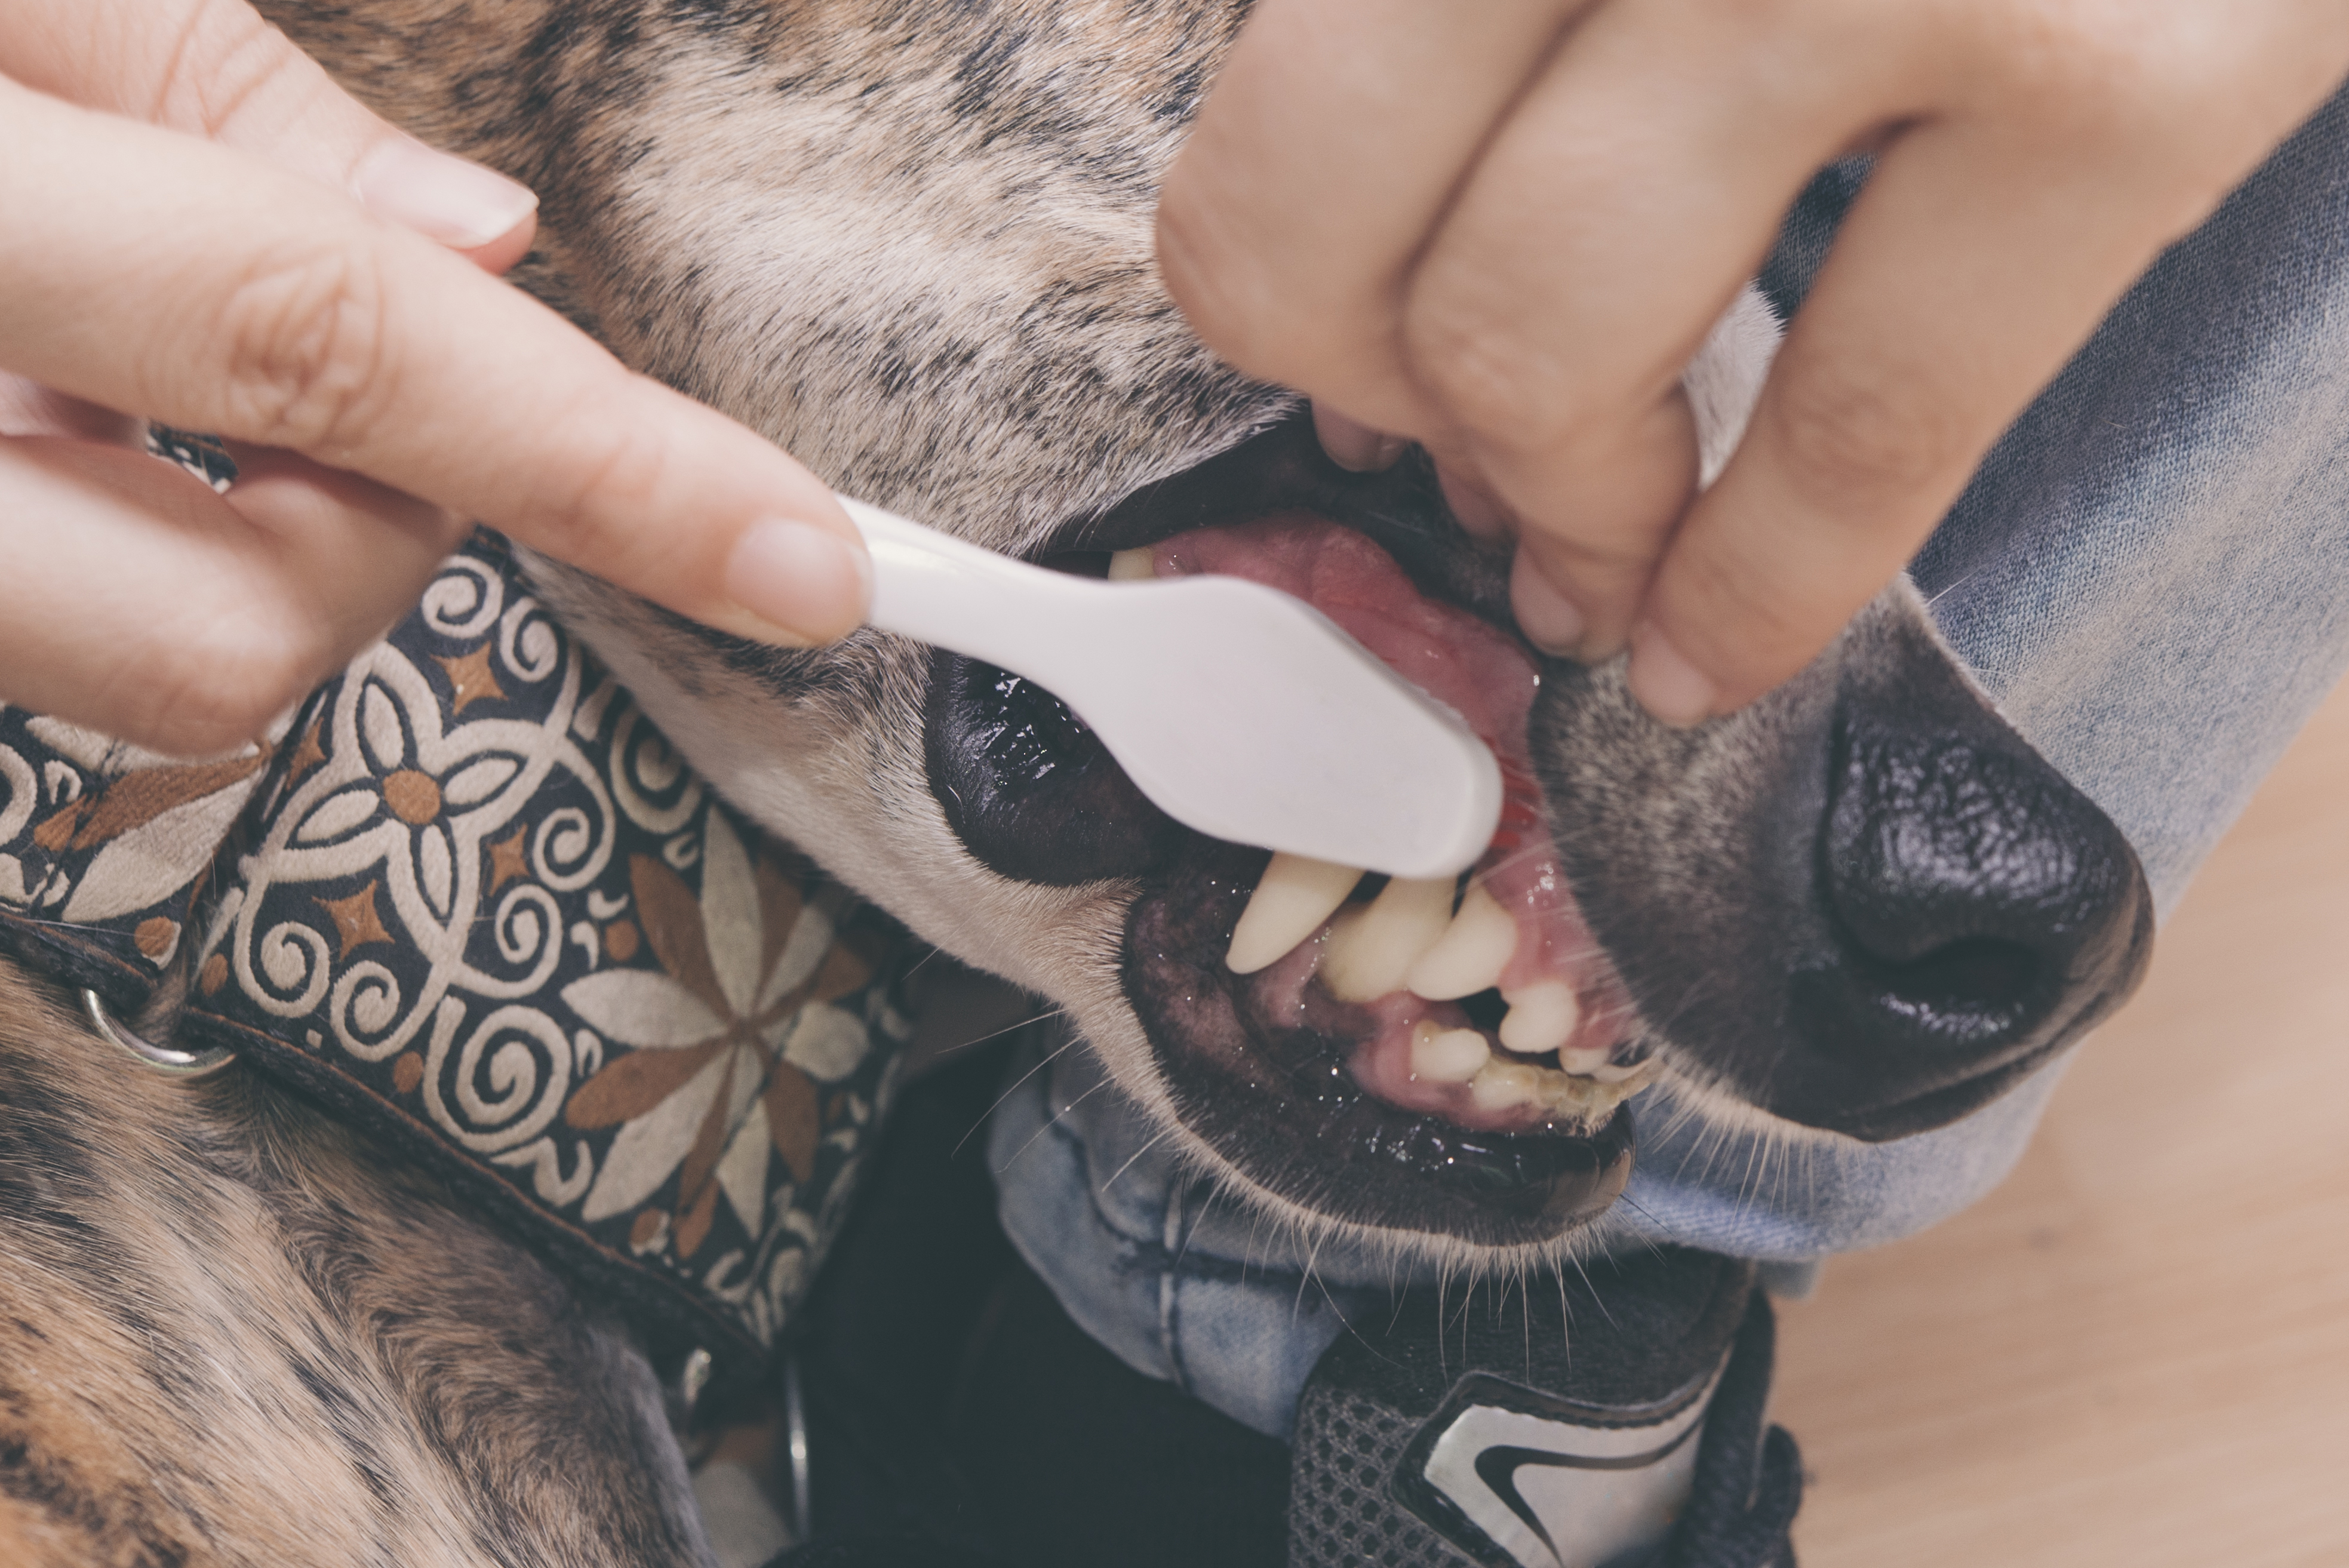 dog dental